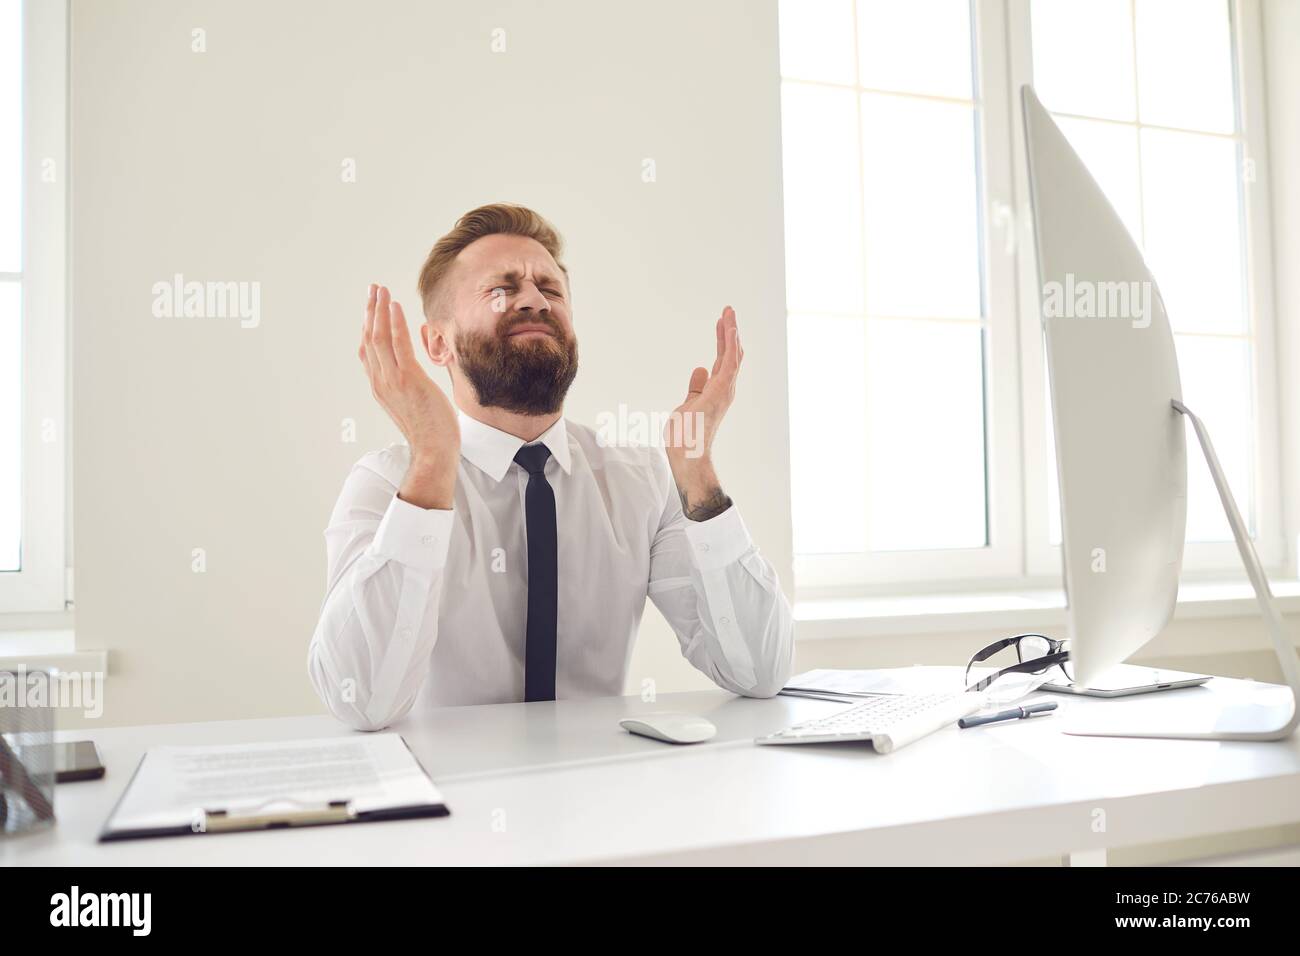 Der verärgerte, müde Geschäftsmann hob seine Hände auf und sah einen Computer an einem Schreibtisch im Büro an. Stockfoto